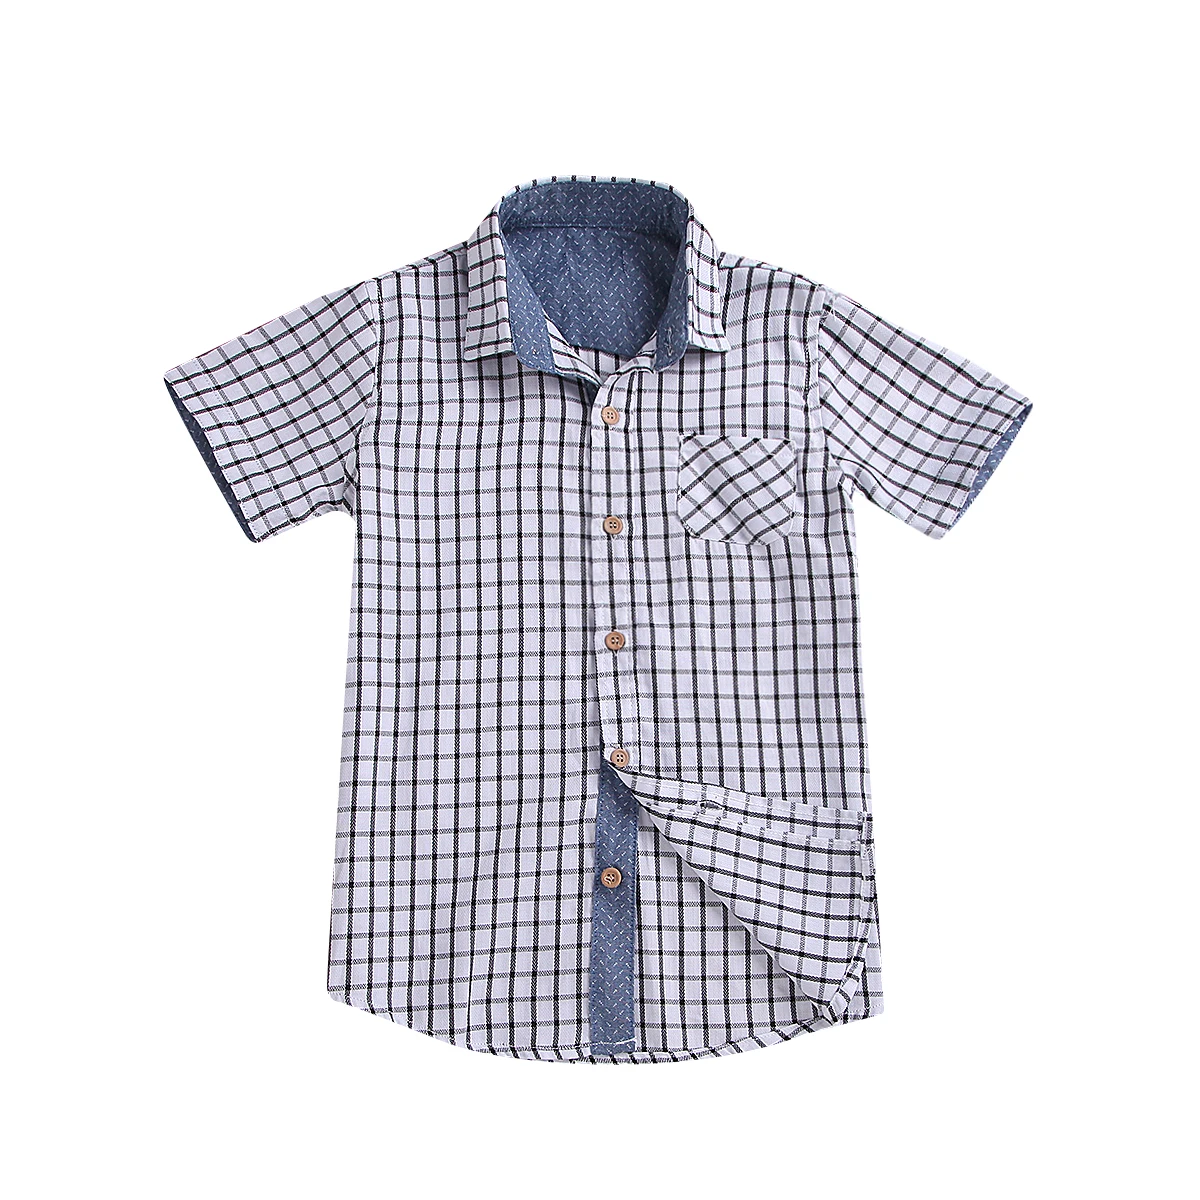 2019 новая стильная одежда для маленьких мальчиков 3 10 лет клетчатые топы рубашка